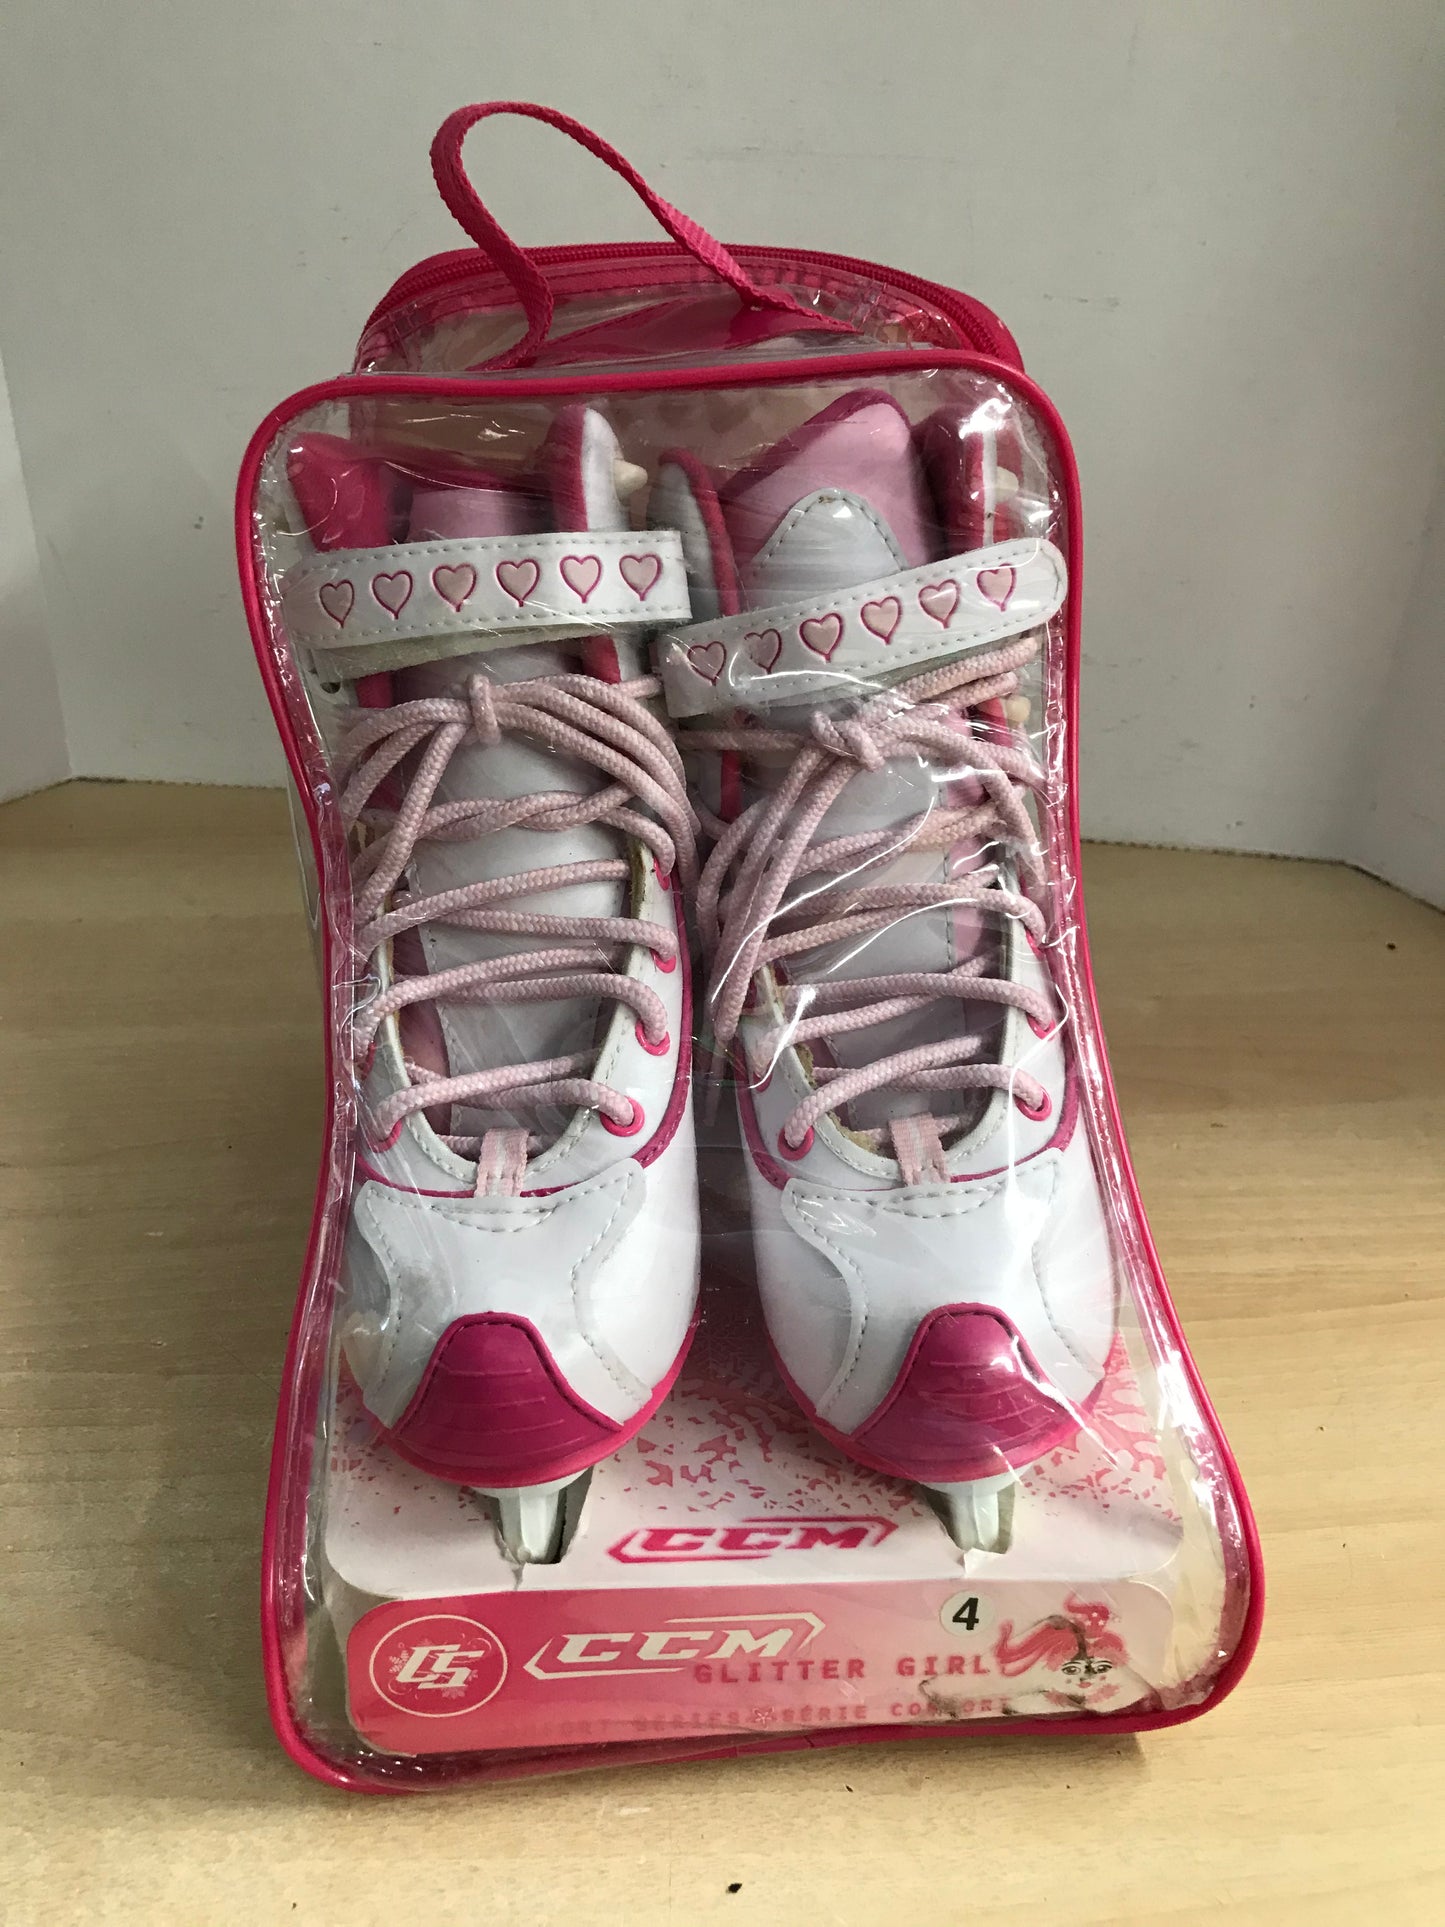 Figure Skates Child Size 4 CCM Glitter Girl Pink White Soft Skates  NEW